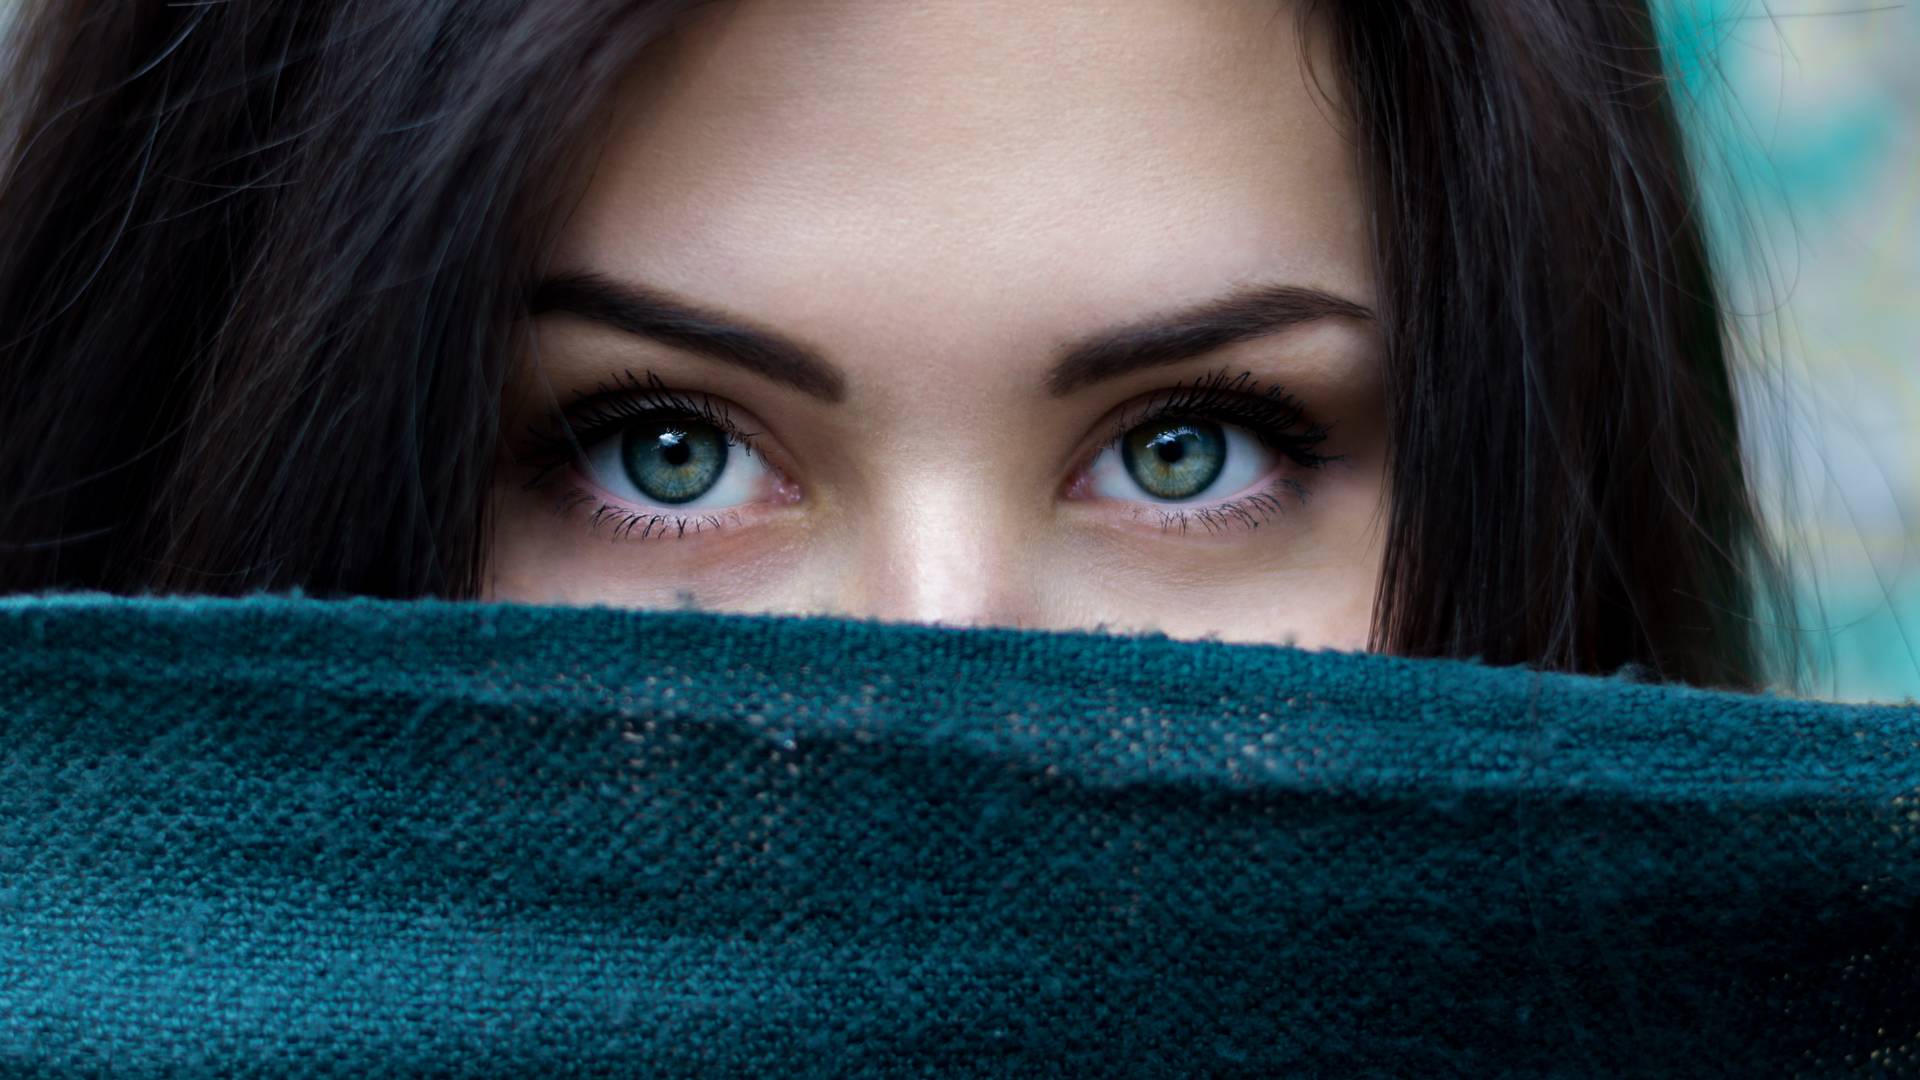 Kolor oczu zdradza ważne informacje o tobie. Jakie "tajemnice" zdradzają twoje?